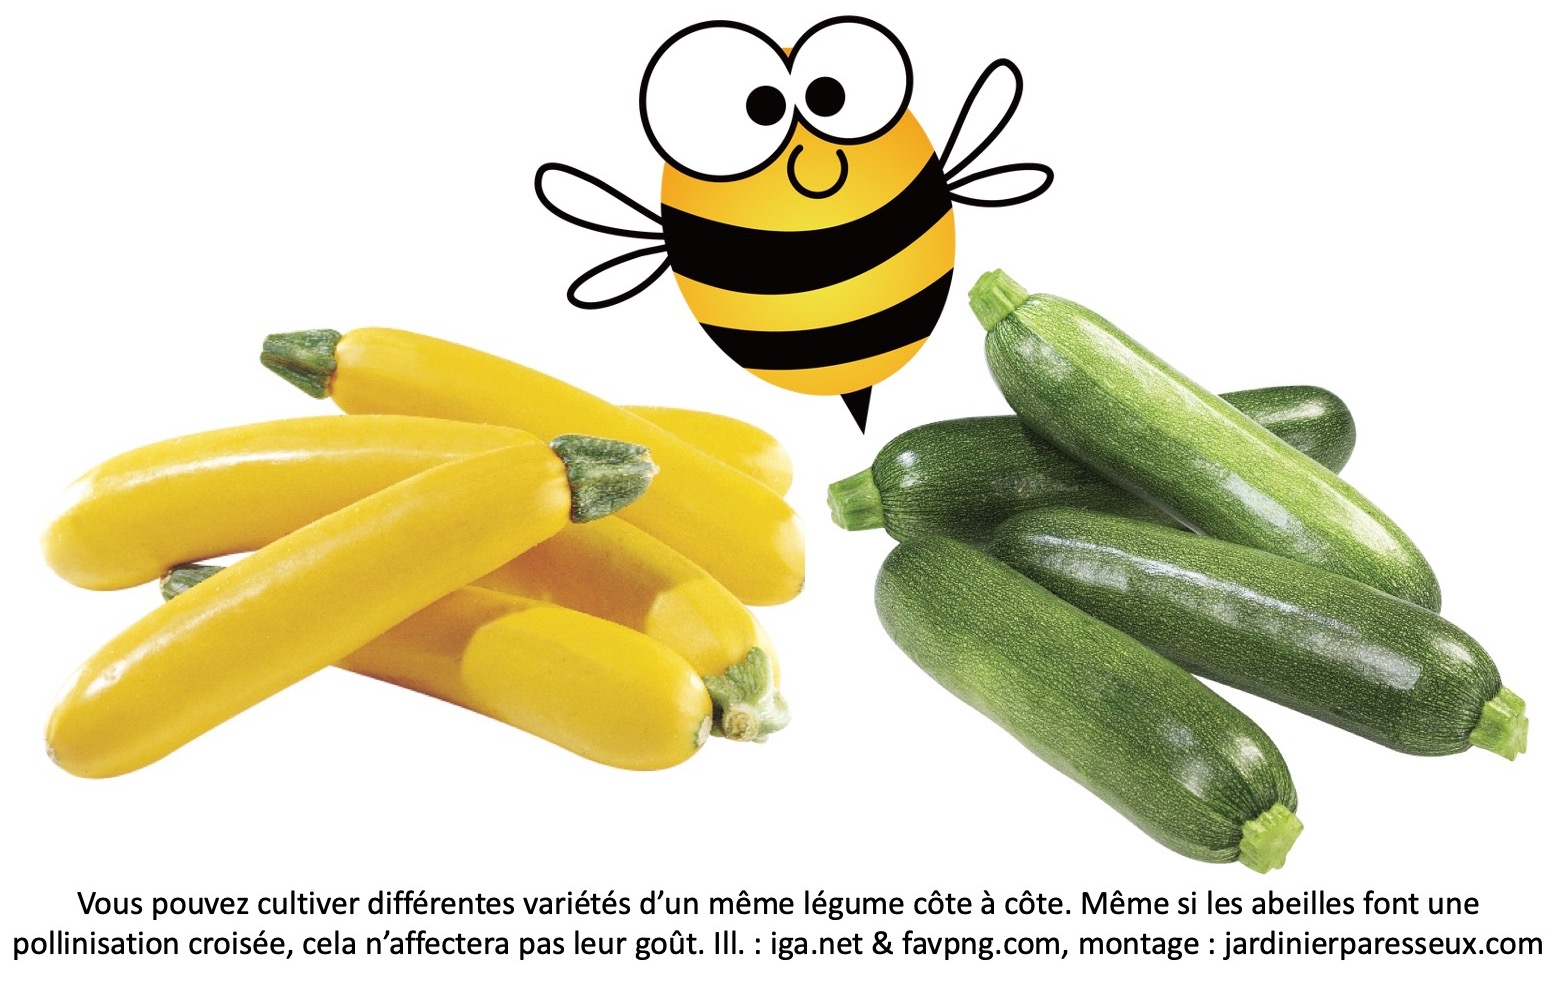 Courgettes jaunes et courgettes vertes avec une abeille pollinisatrice entre elles.